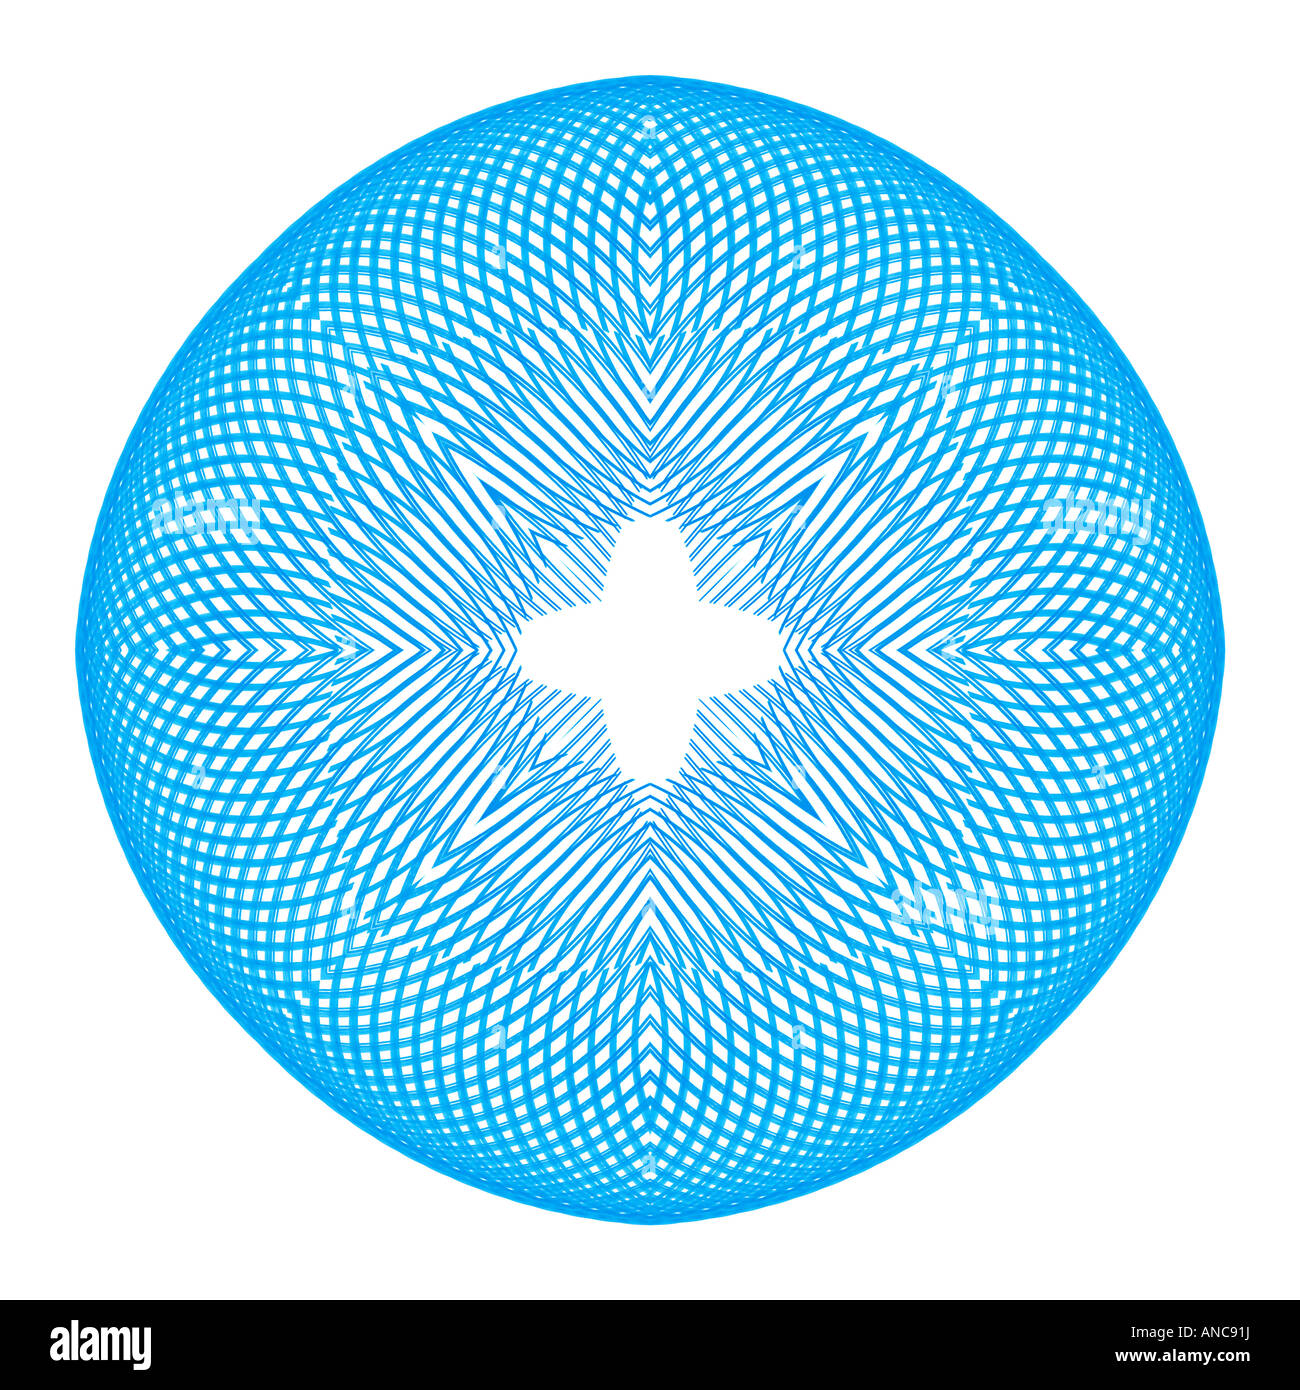 Résumé de l'image fractale ressemblant à awired star mesh Banque D'Images